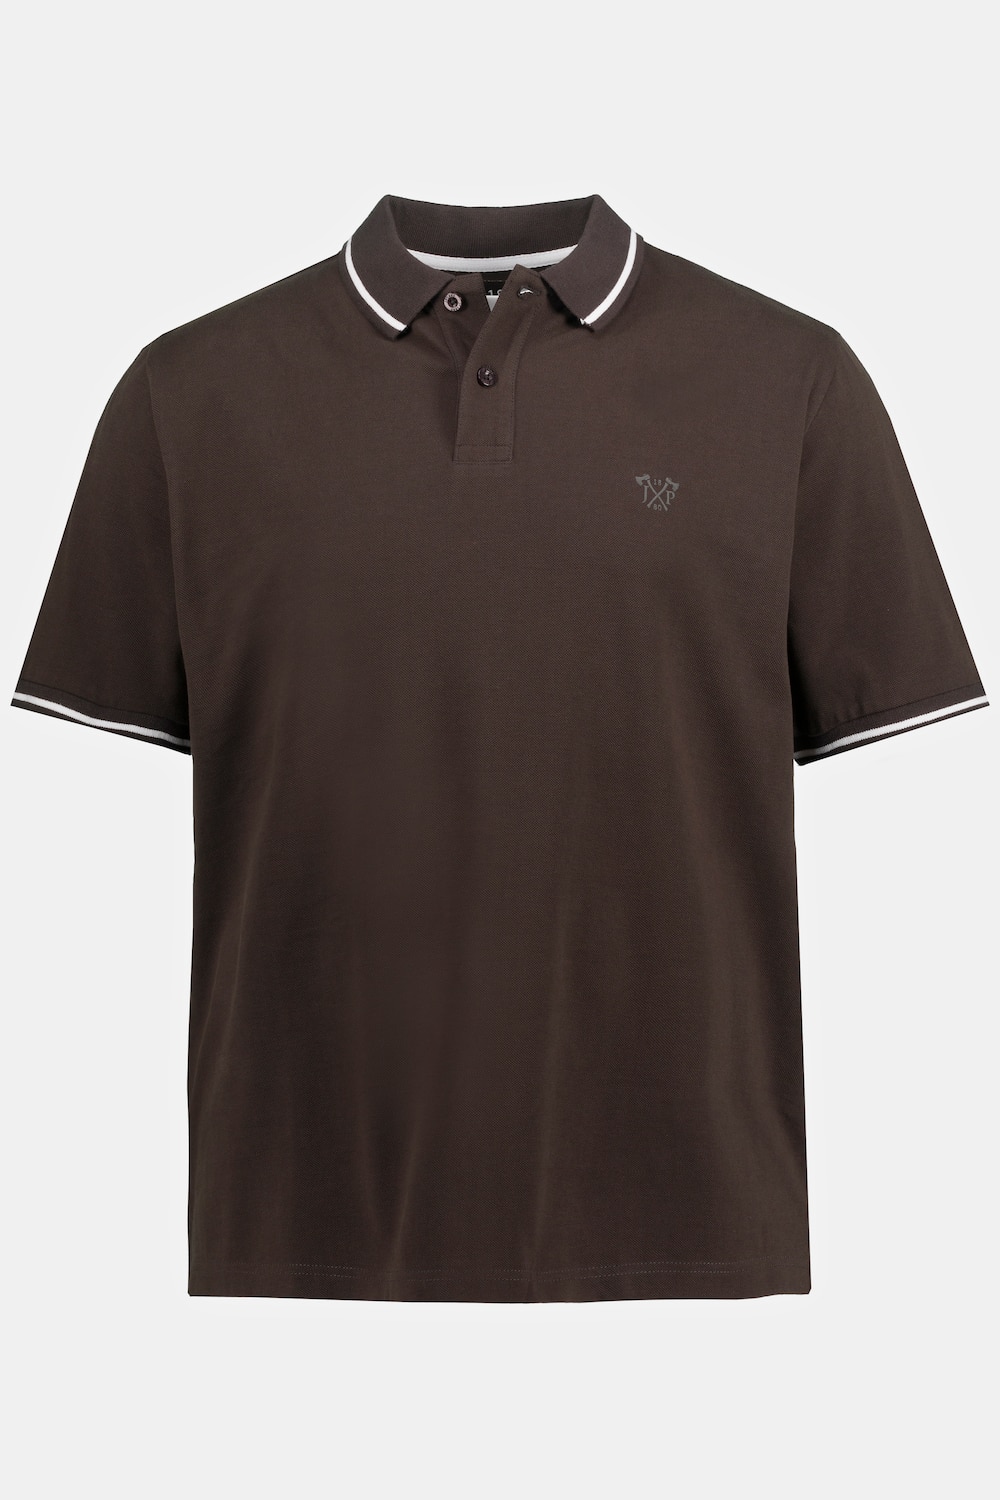 Poloshirt, Große Größen, Herren, braun, Größe: LT, Baumwolle, JP1880